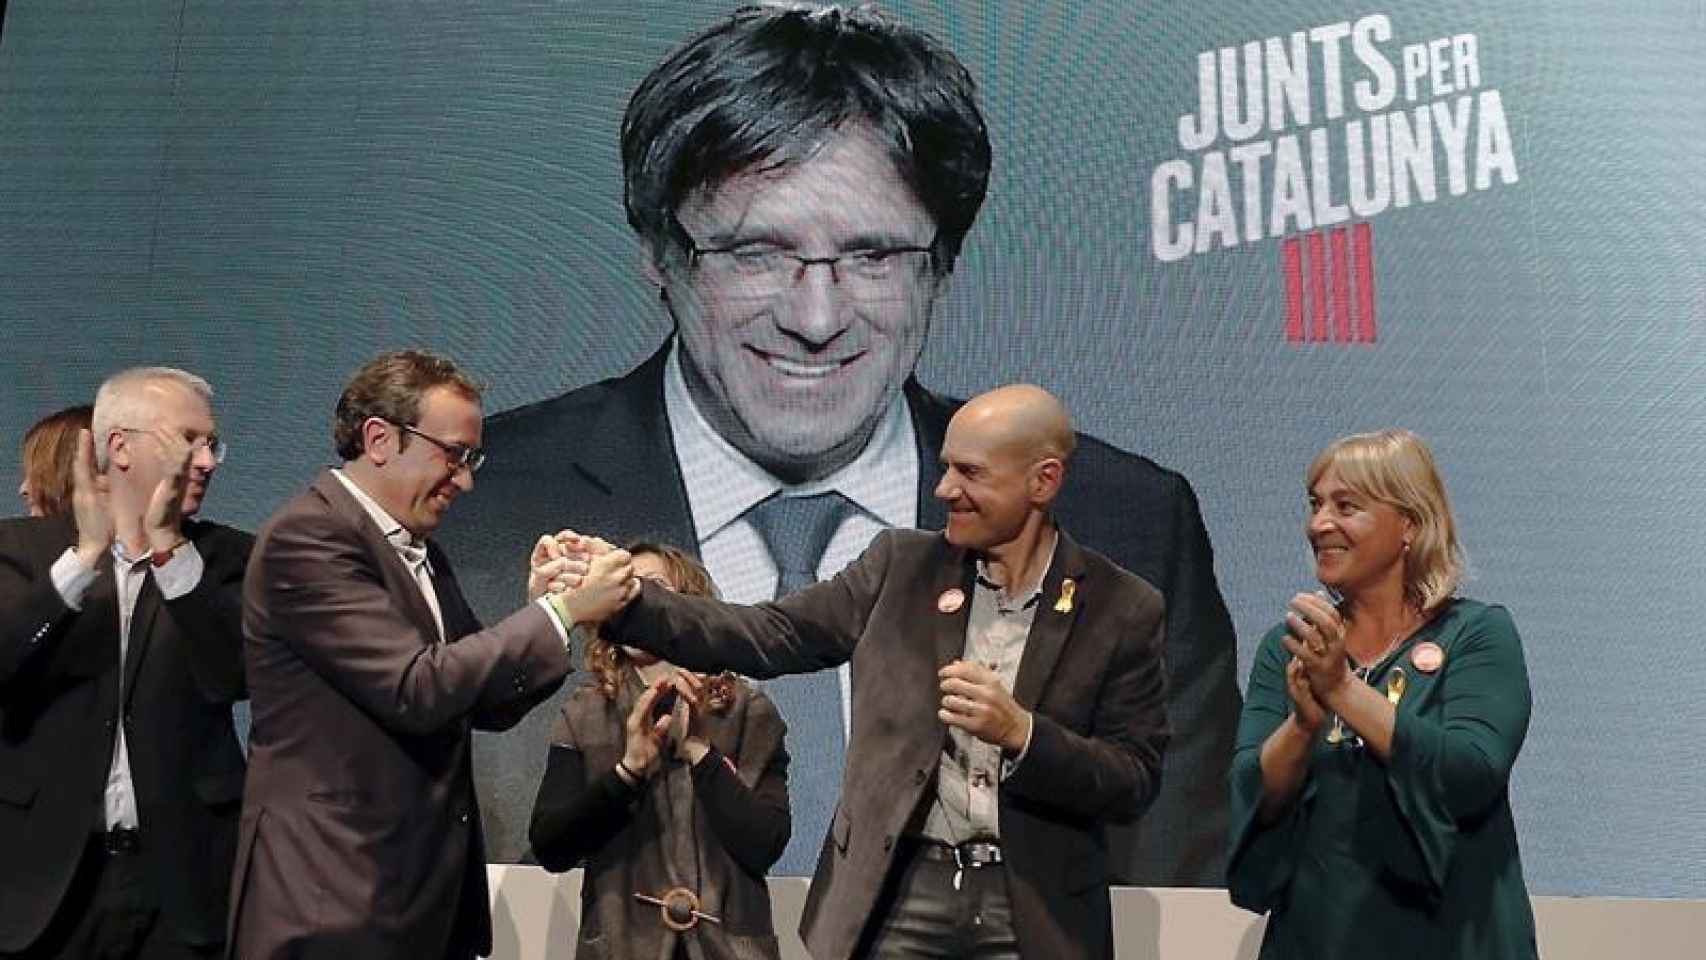 Carles Puigdemont, en la pantalla, en un acto de campaña de Junts pel Cataluña / EFE